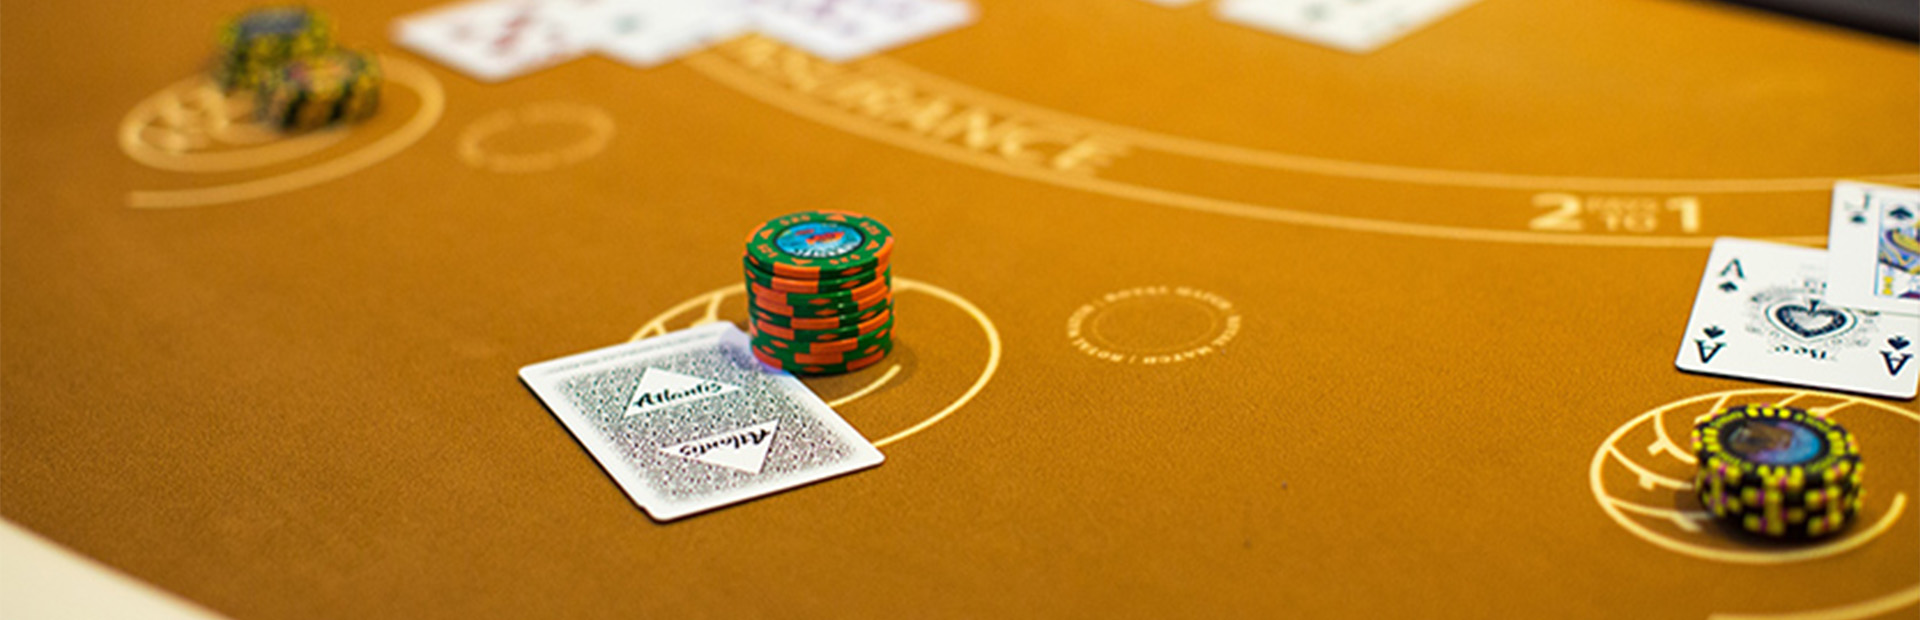 Blackjack at Atlantis Casino Resort Spa in Reno Nevada